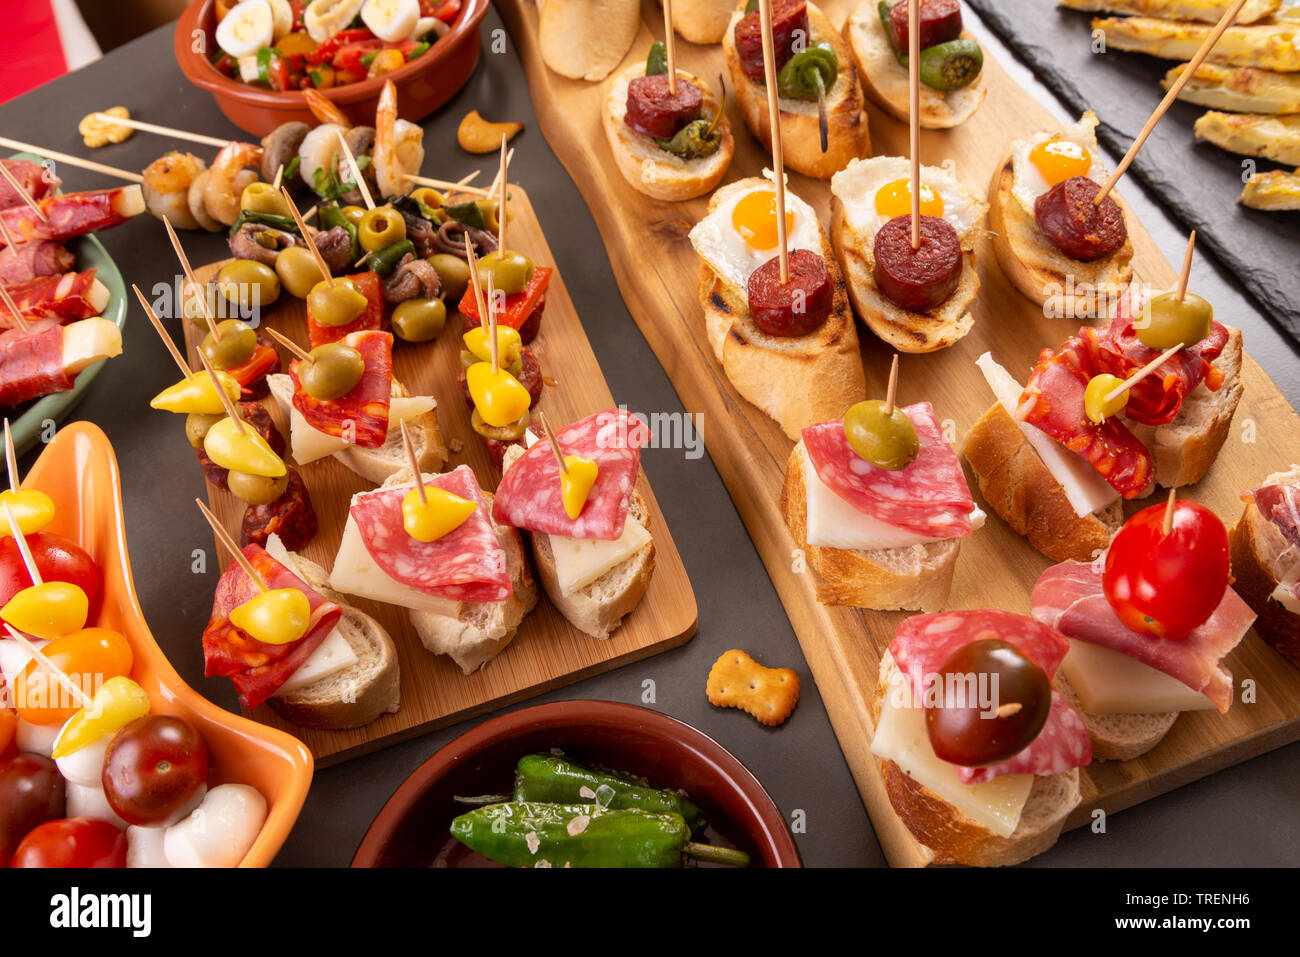 Kleine Vorspeisen am Spieß mit Käse, Oliven und Würstchen. Spanische Tapas oder italienische Antipasti Essen Stockfoto